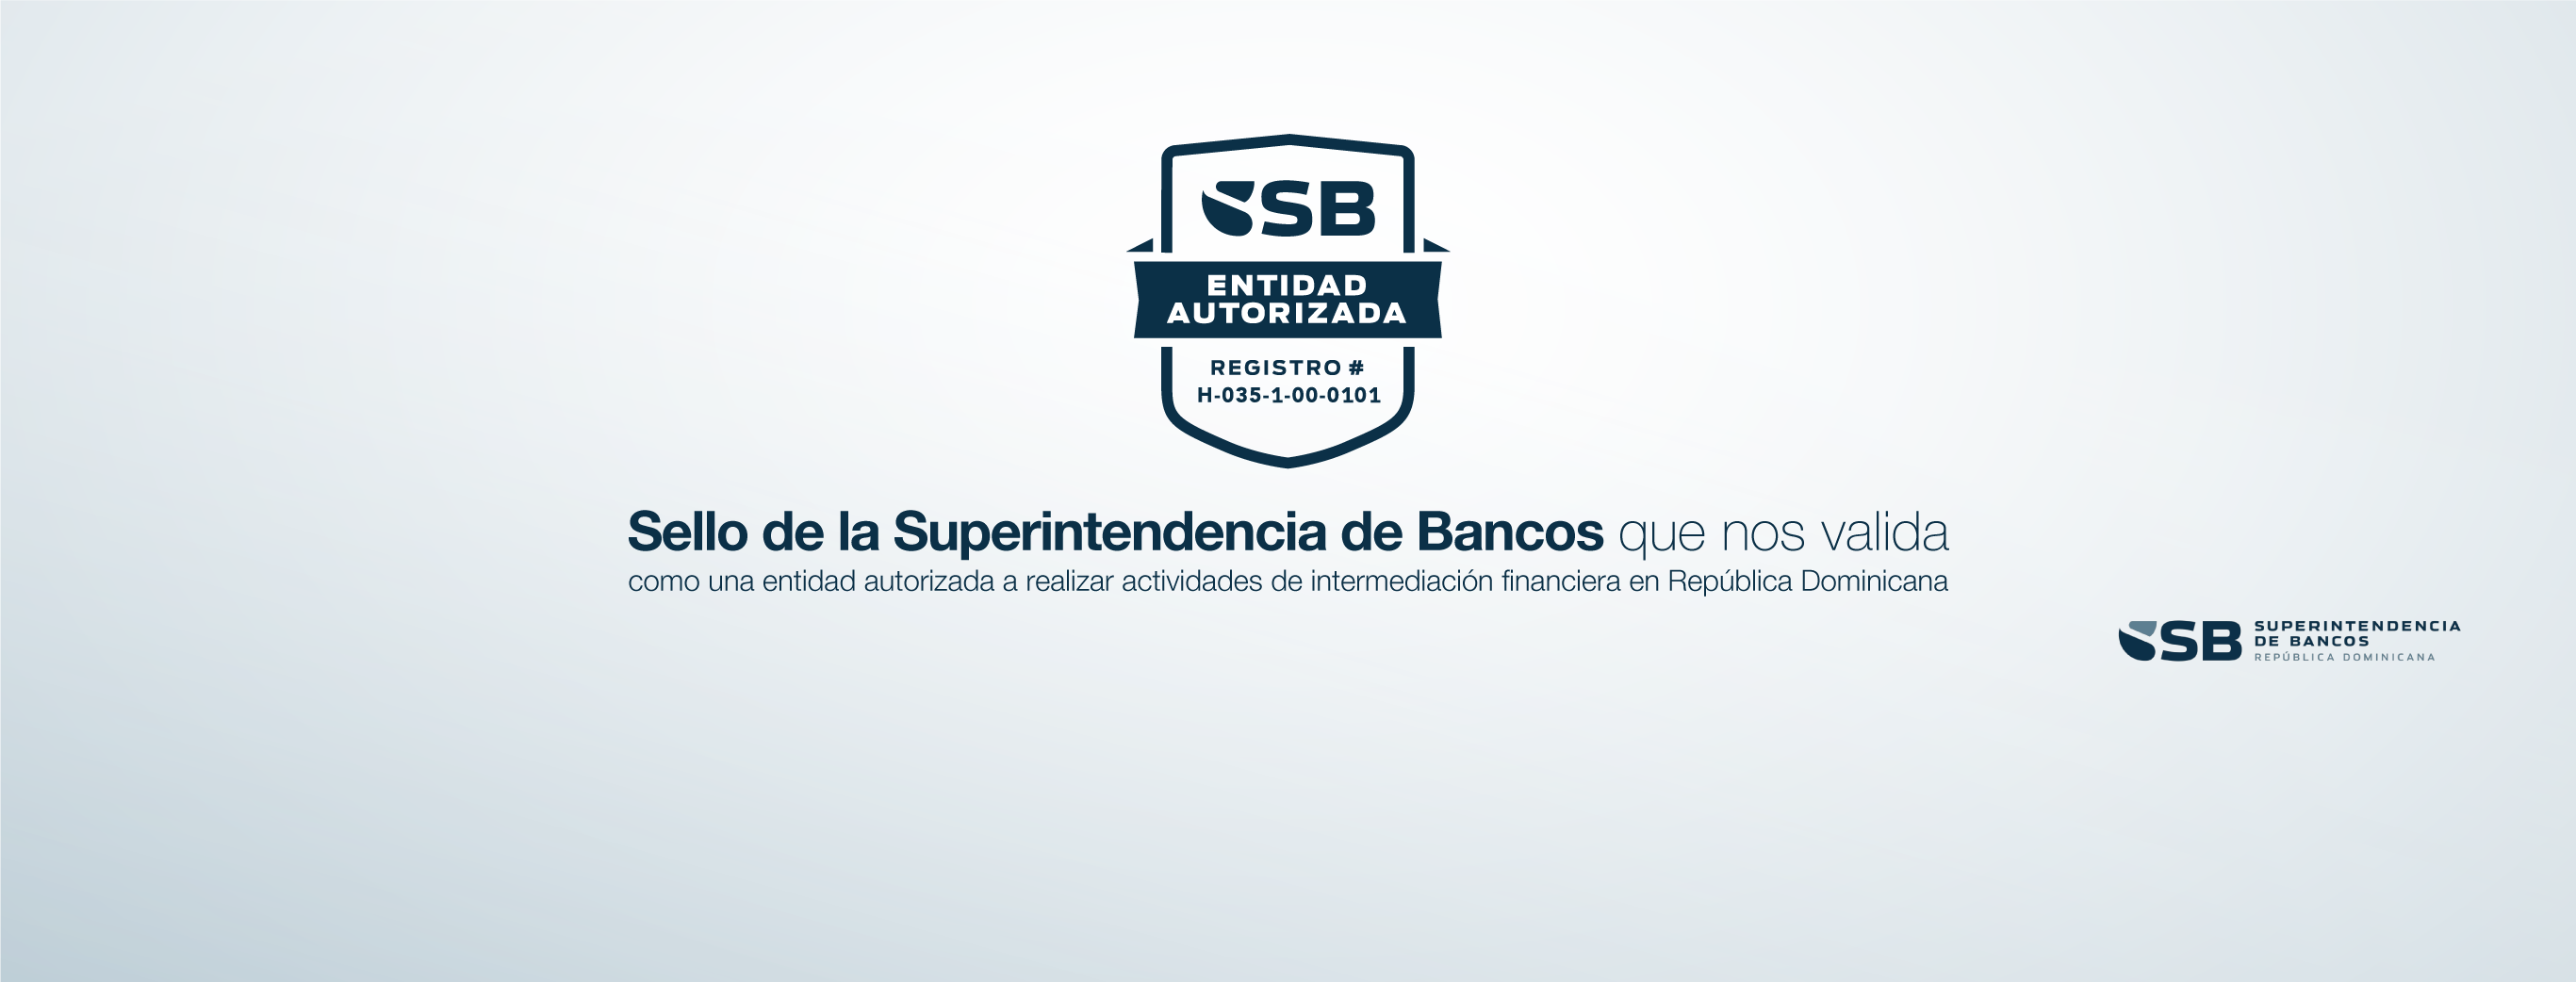 Sello de la Superintendencia de Bancos